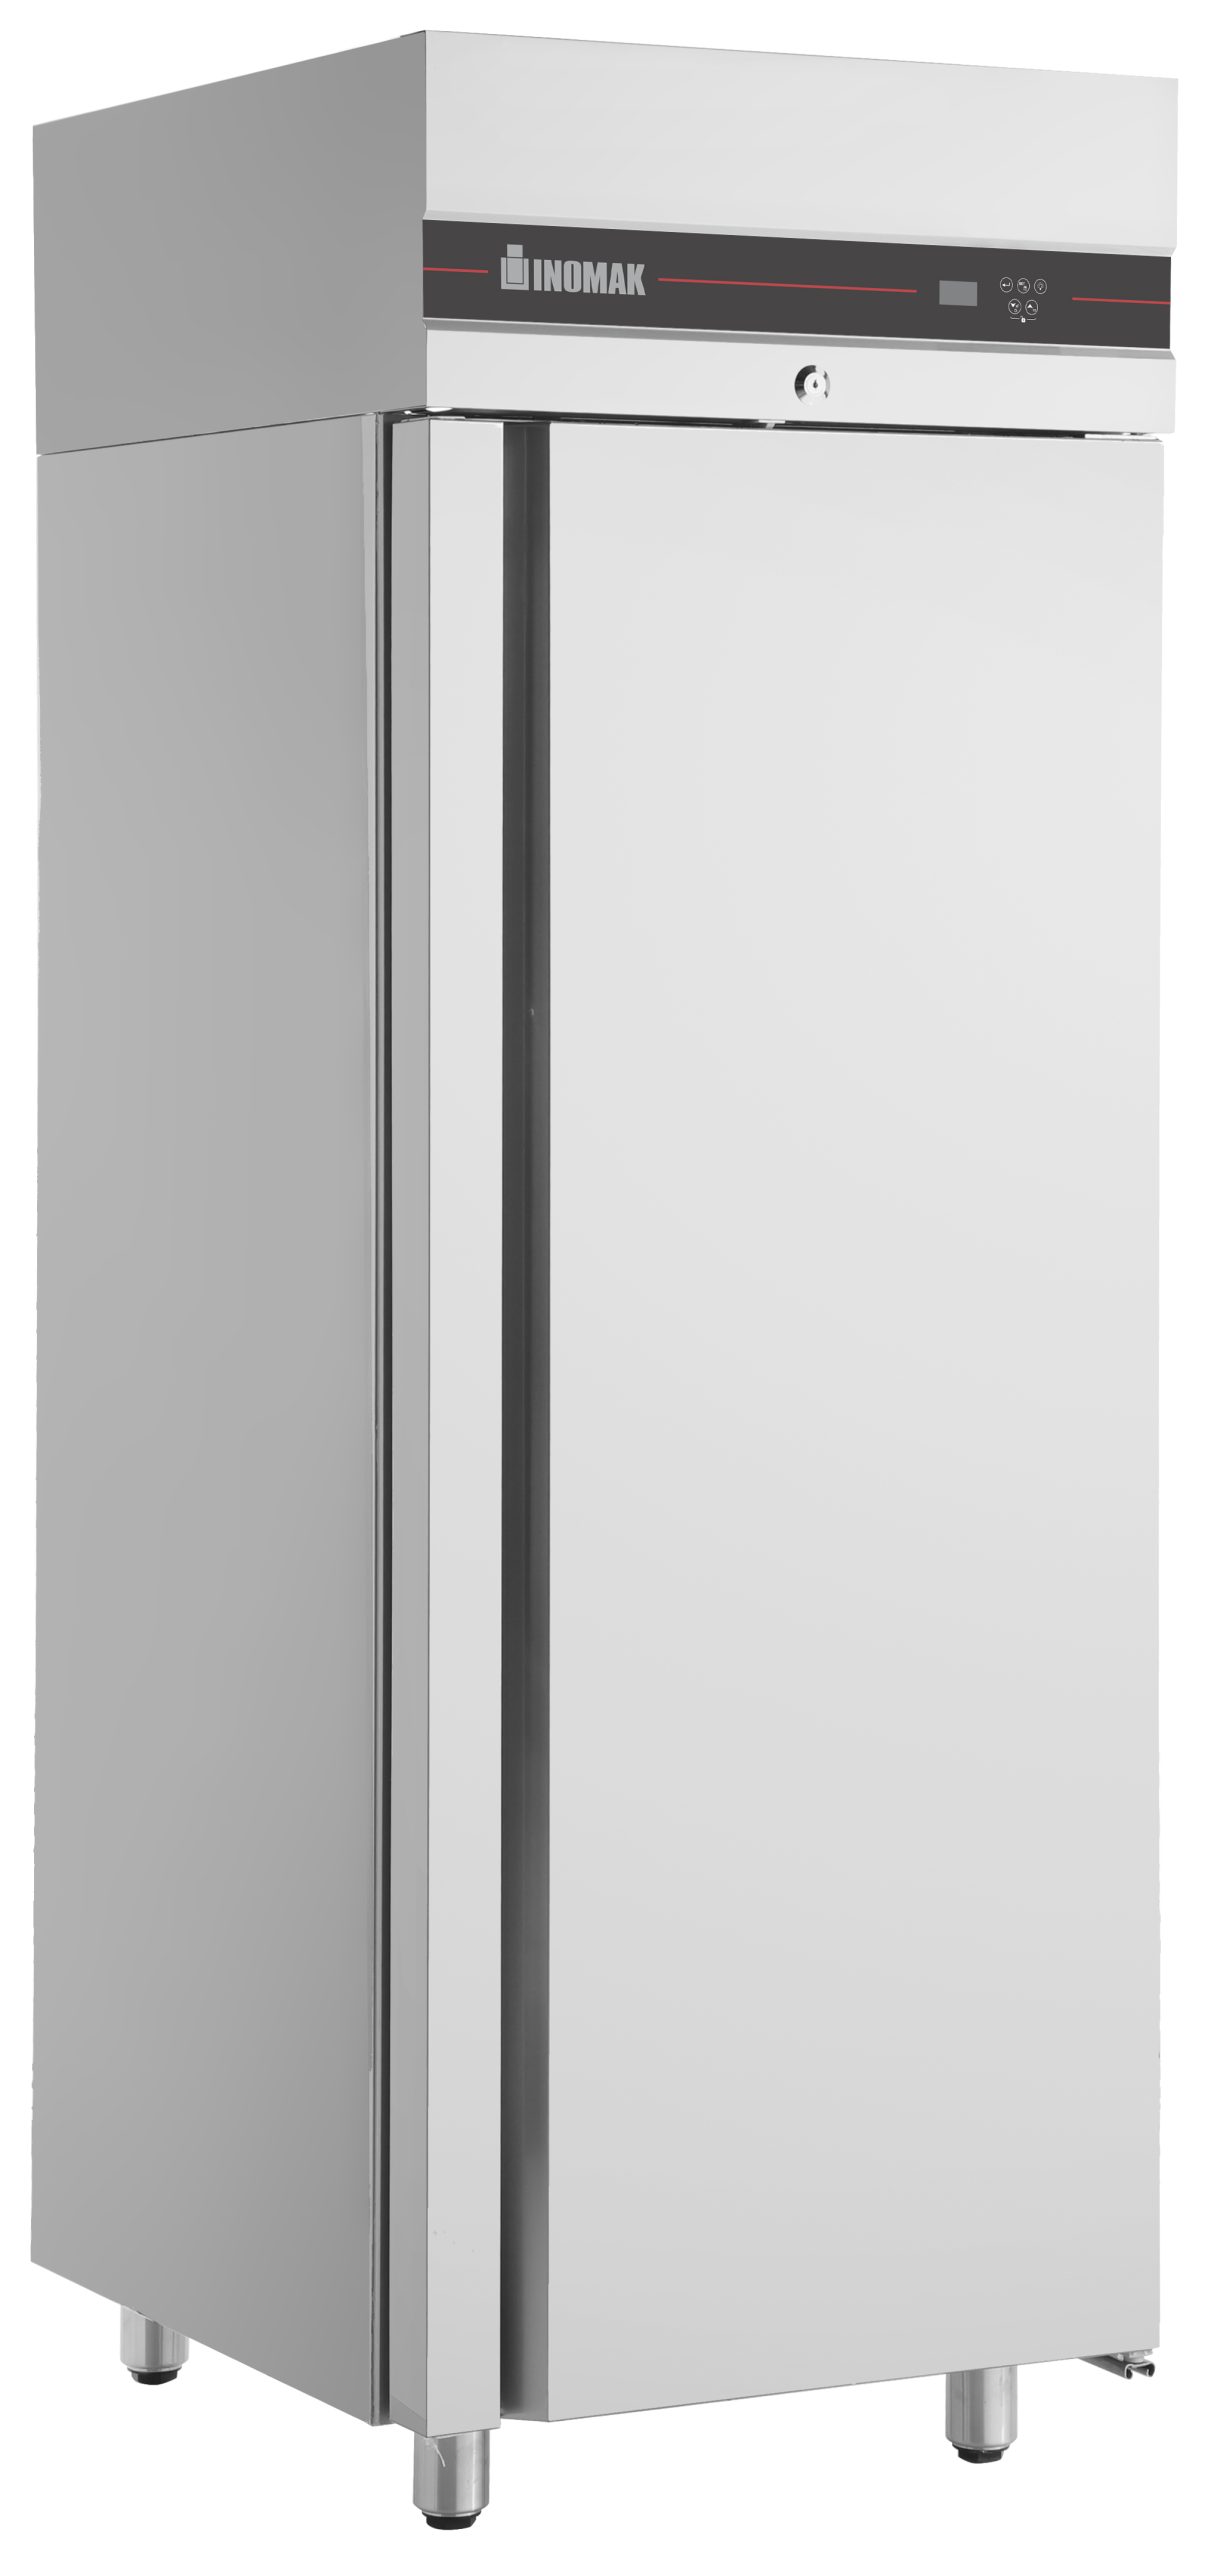 Inomak Single Door Slim Line Freezer